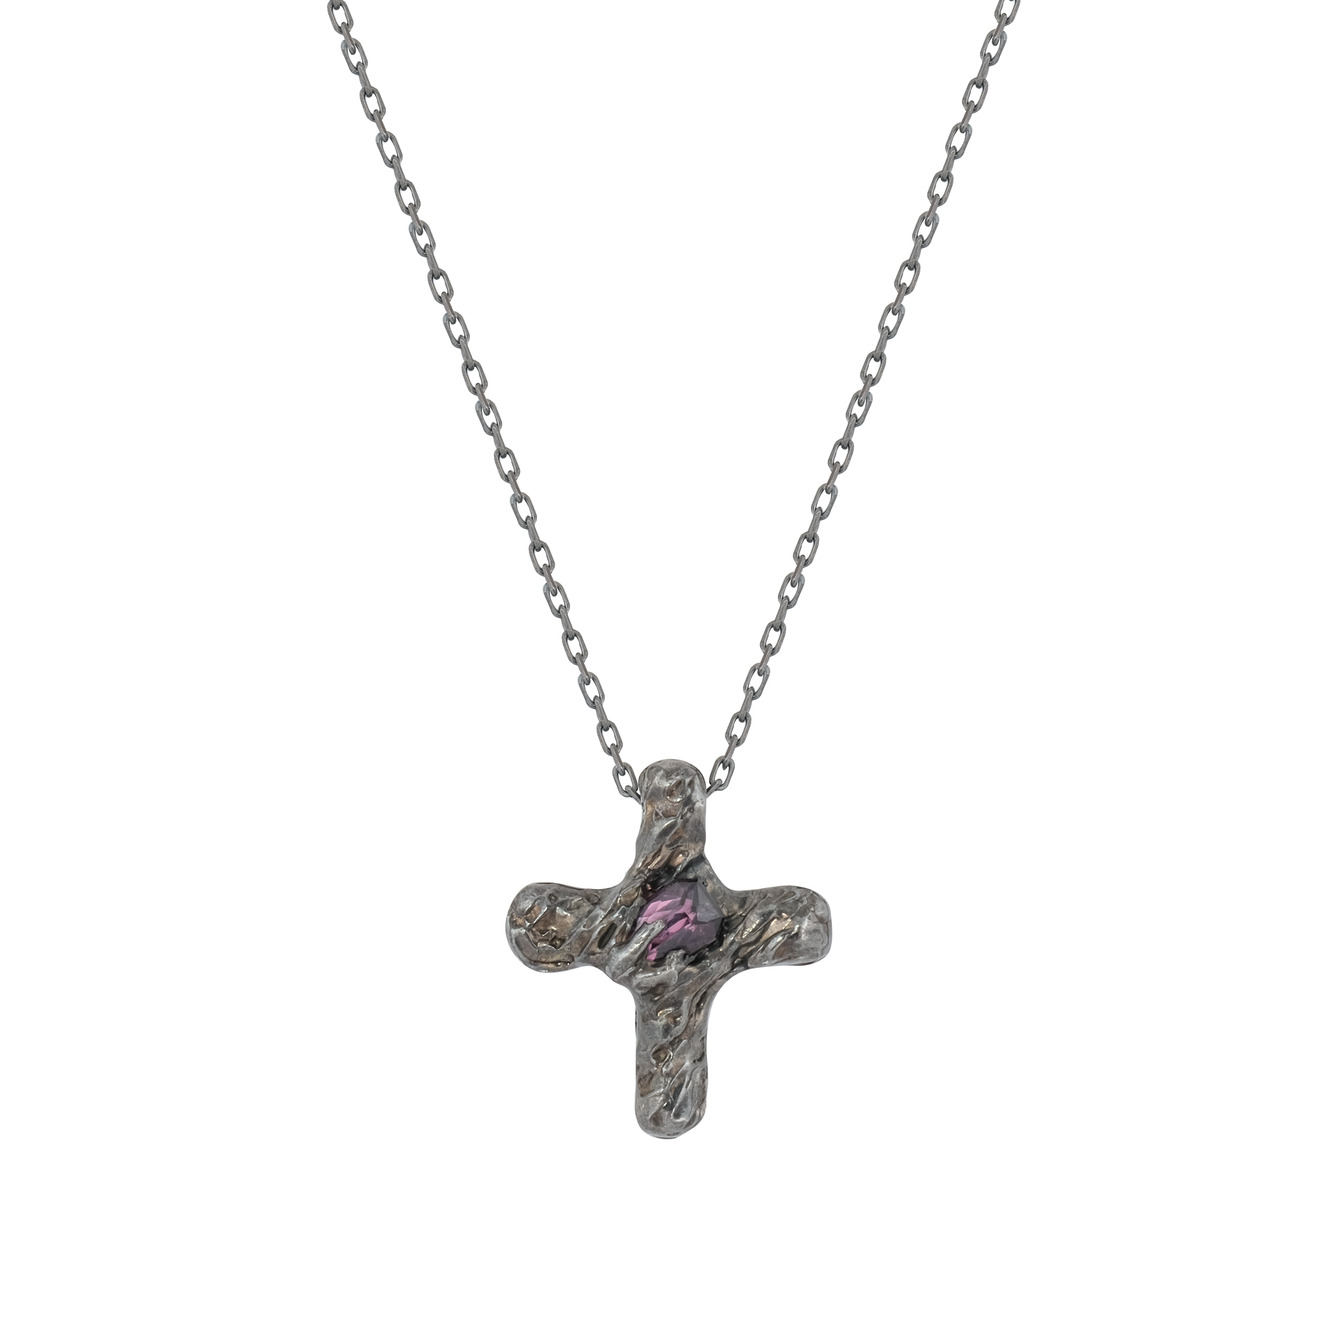 Kintsugi Jewelry Кулон крест из серебра со вставкой из шпинели serebriciti jewelry серьги каскады из шпинели и жемчуга